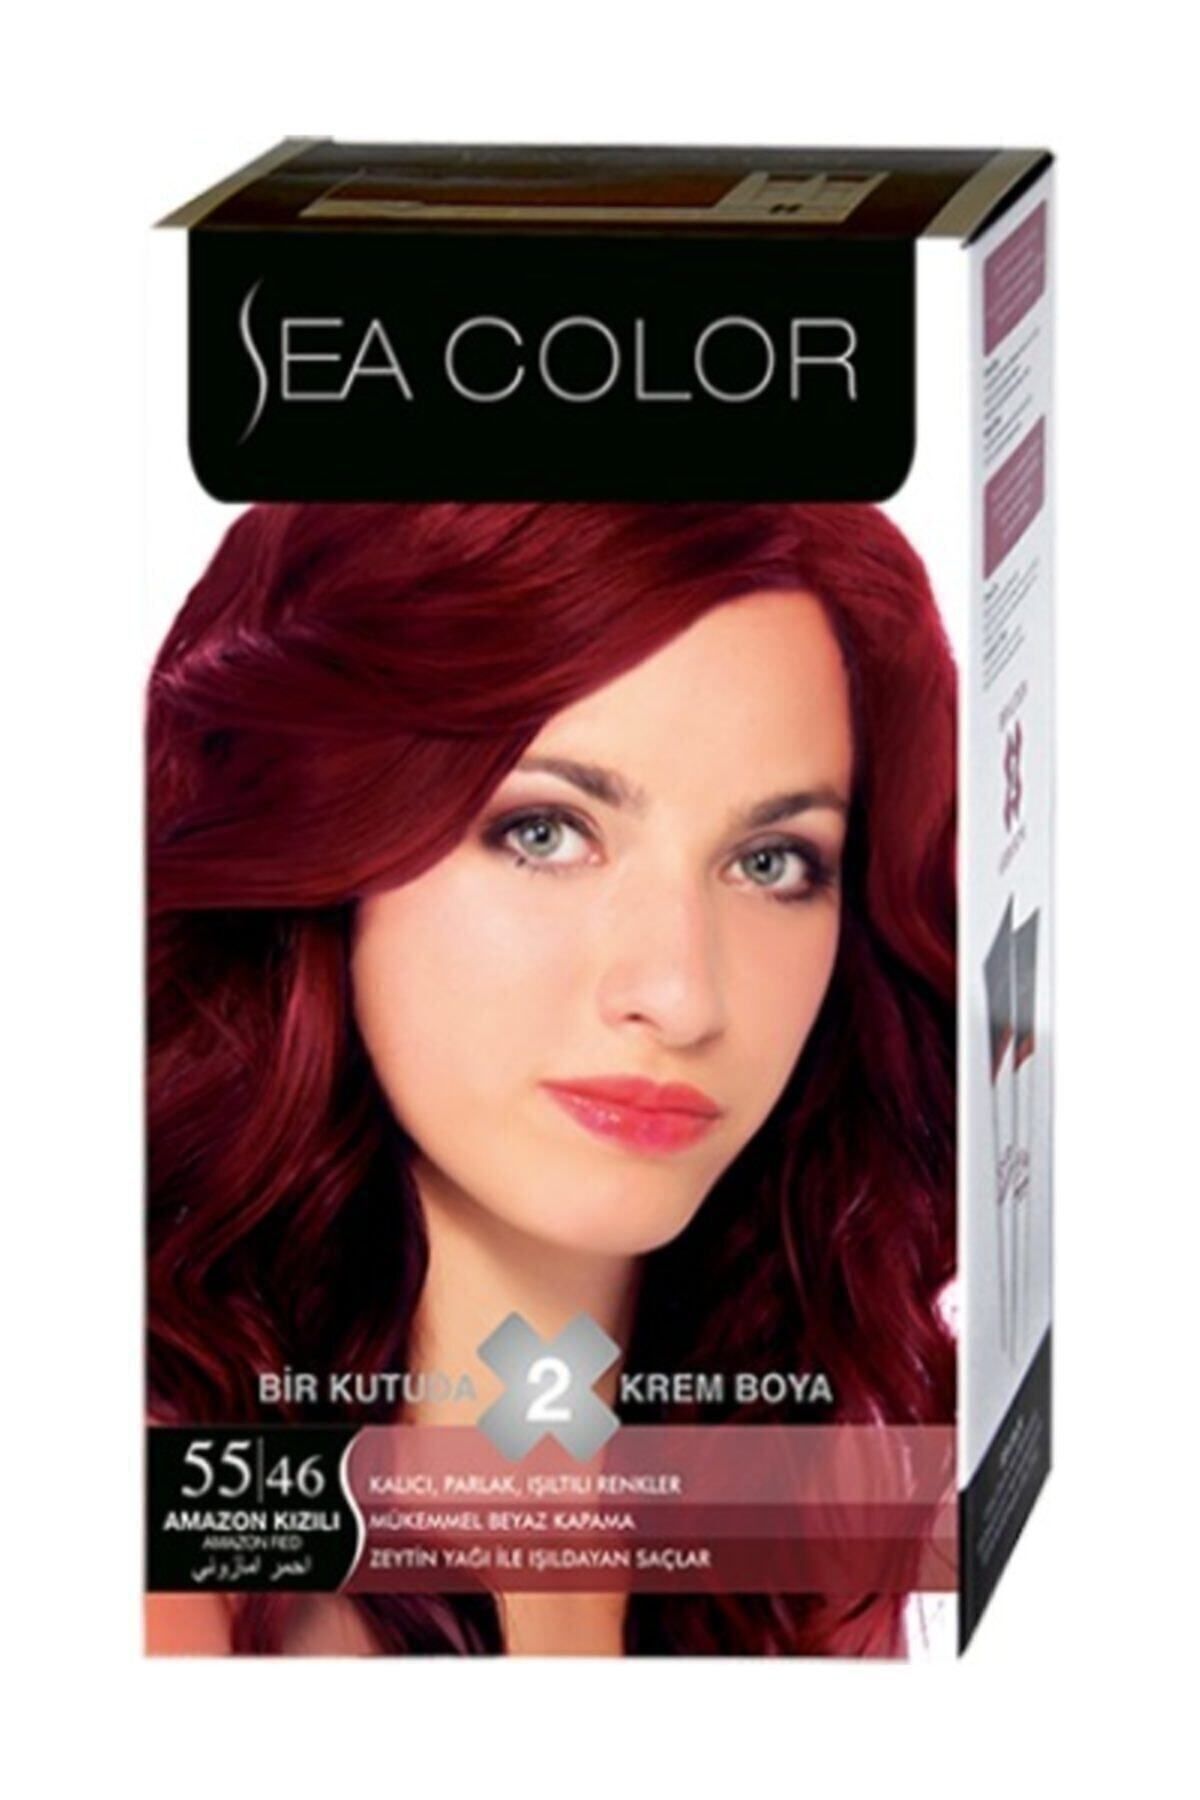 Sea Color Saç Boyası Amazon Kızılı 55/46